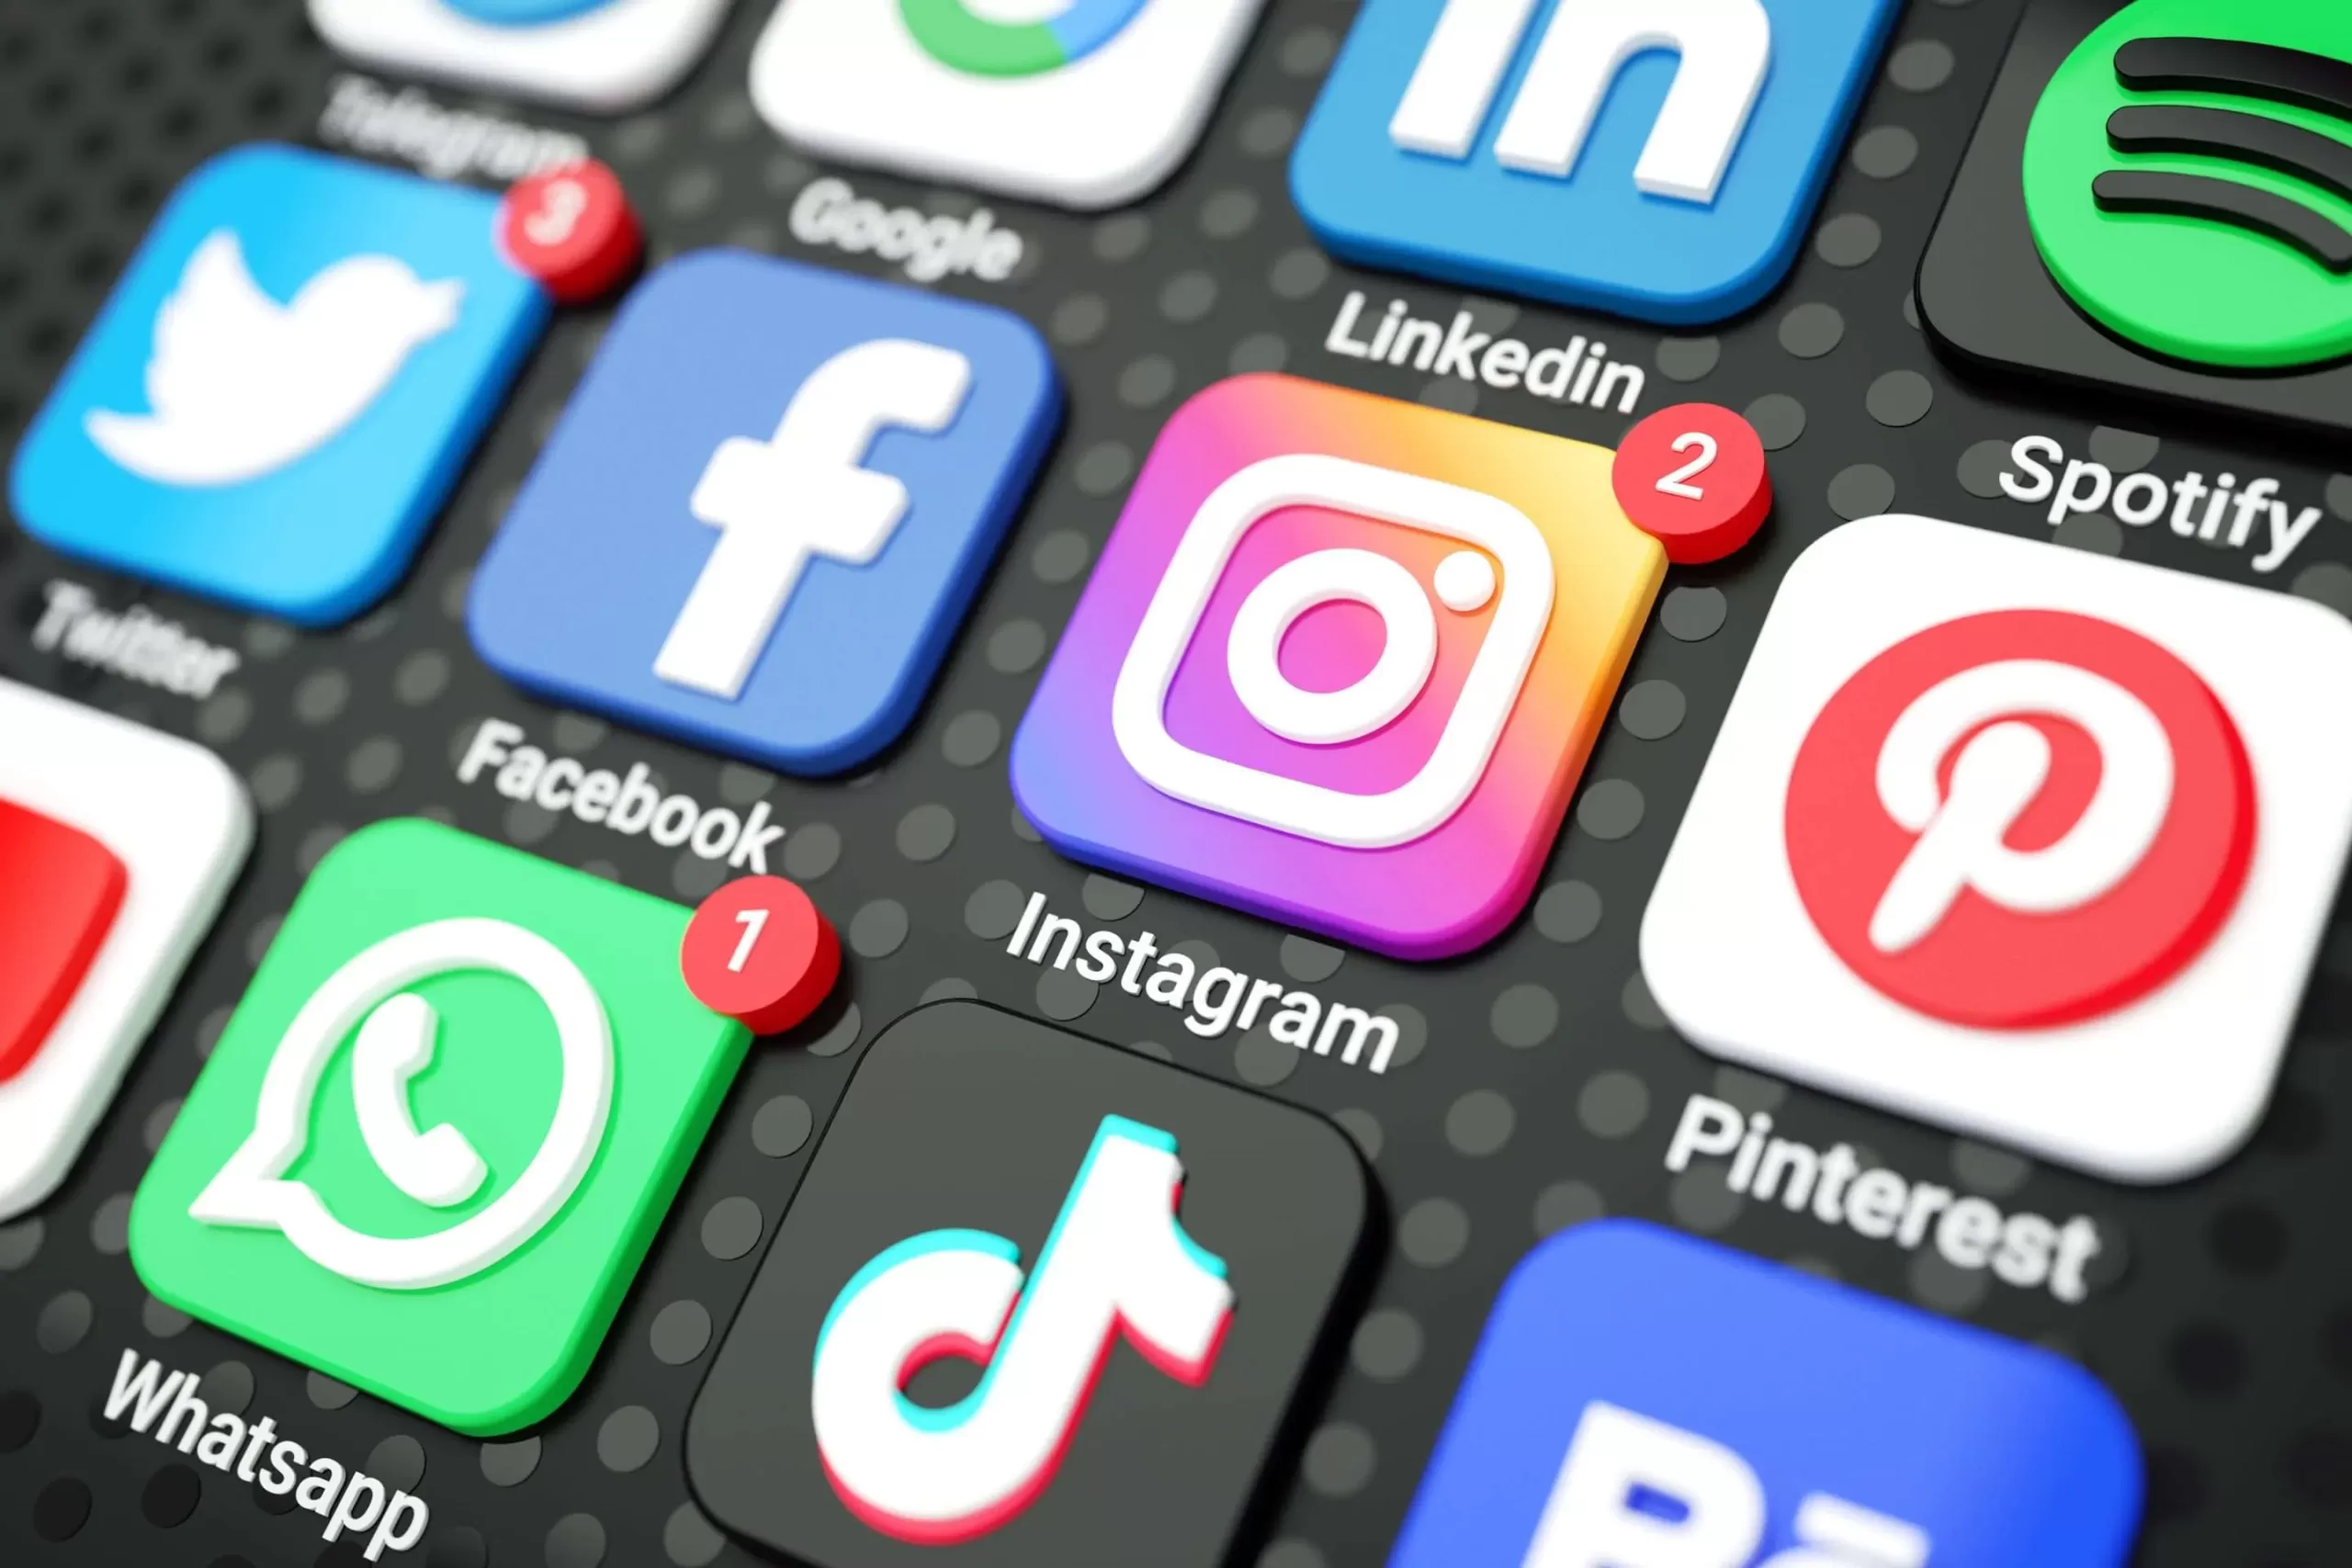 Ist Soziale Medien süchtig machend? Das sagt die Wissenschaft